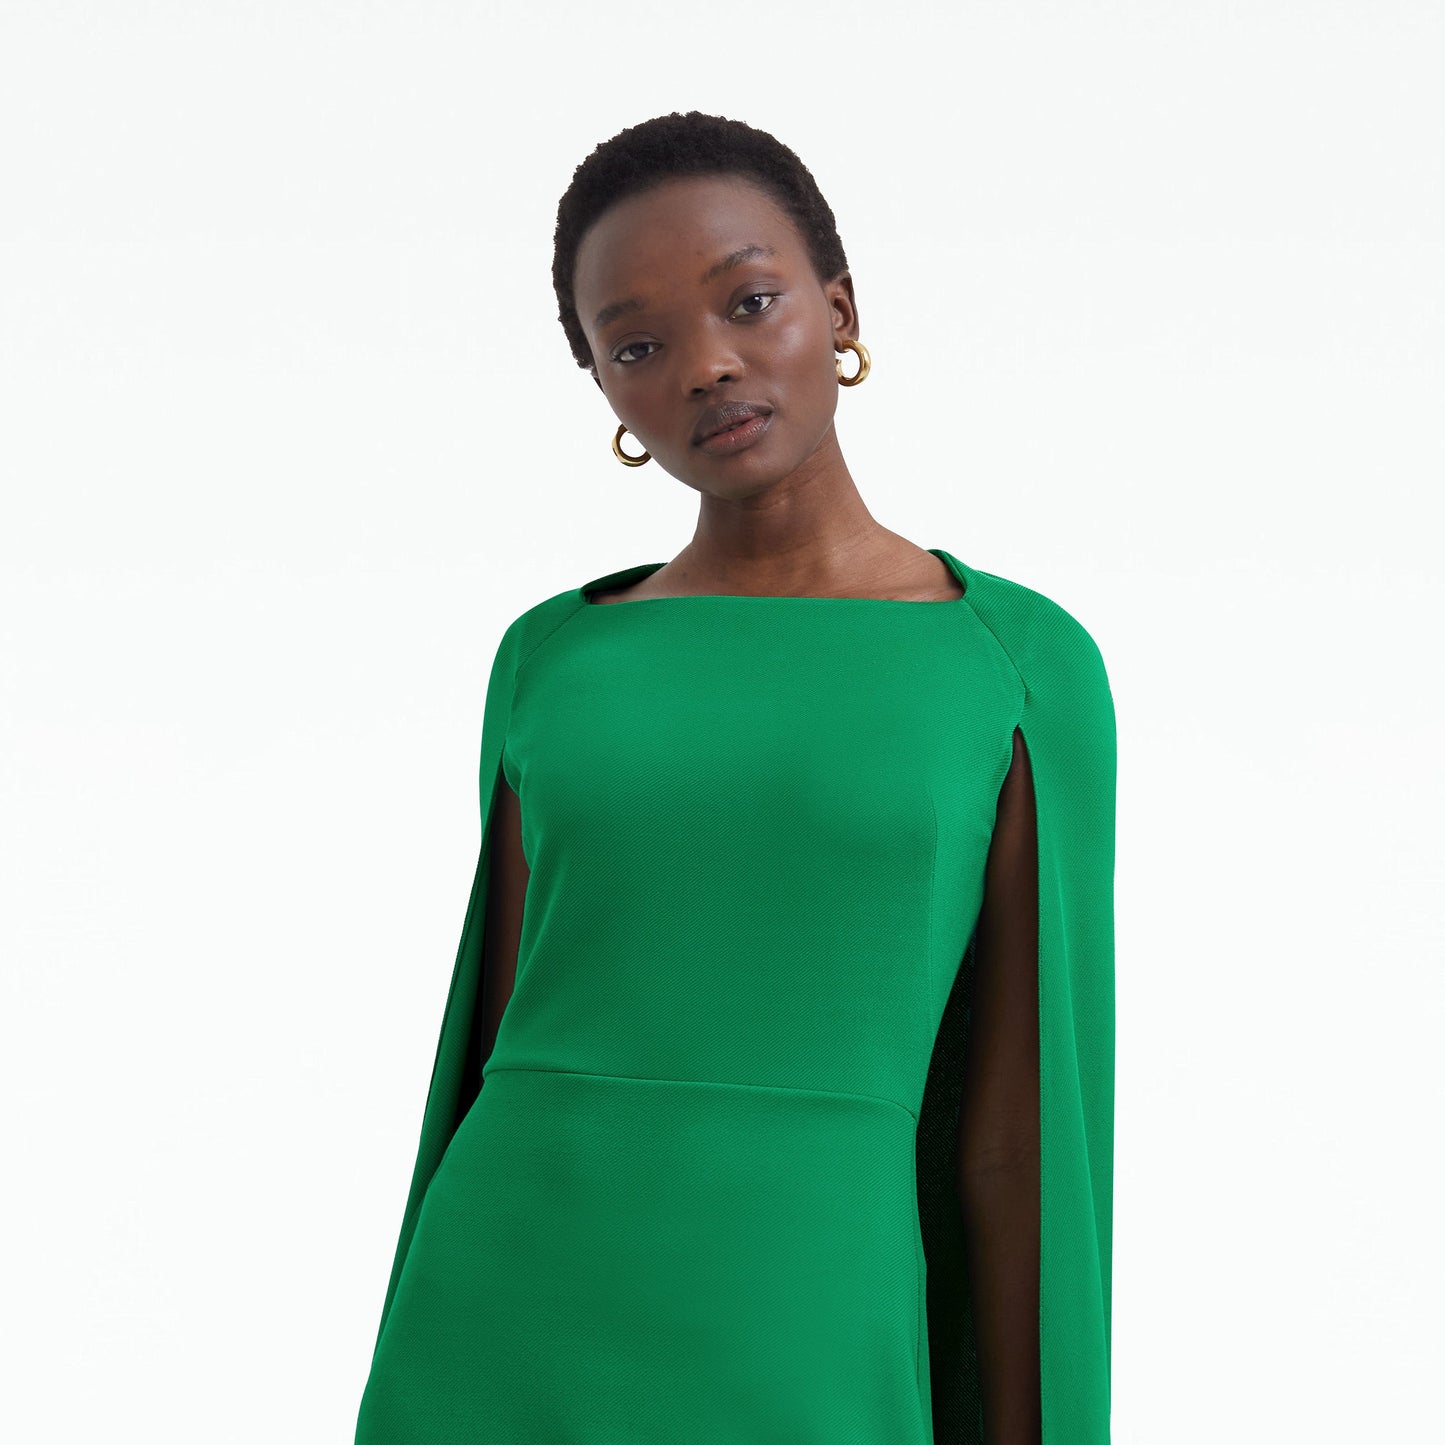 Doola Jewel Green Midi Dress